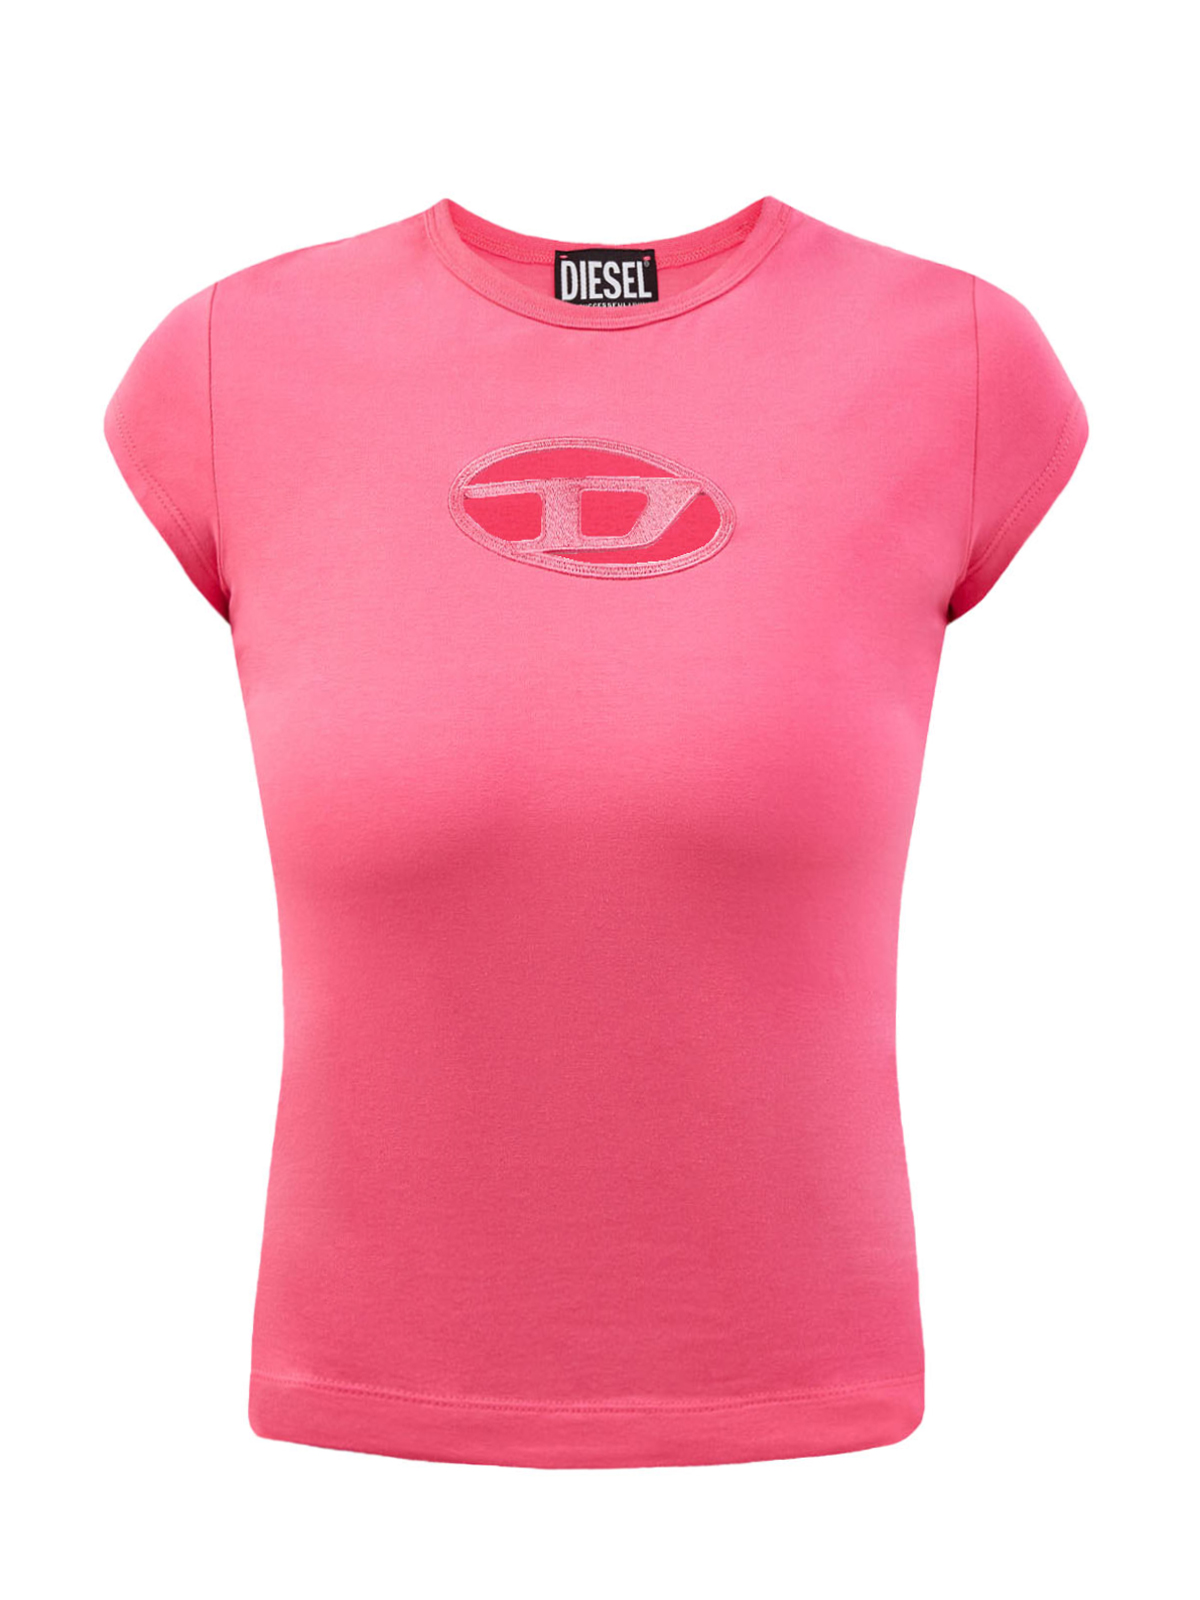 Облегающая футболка T-Angie с логотипом в лазерной технике DIESEL, цвет розовый, размер S